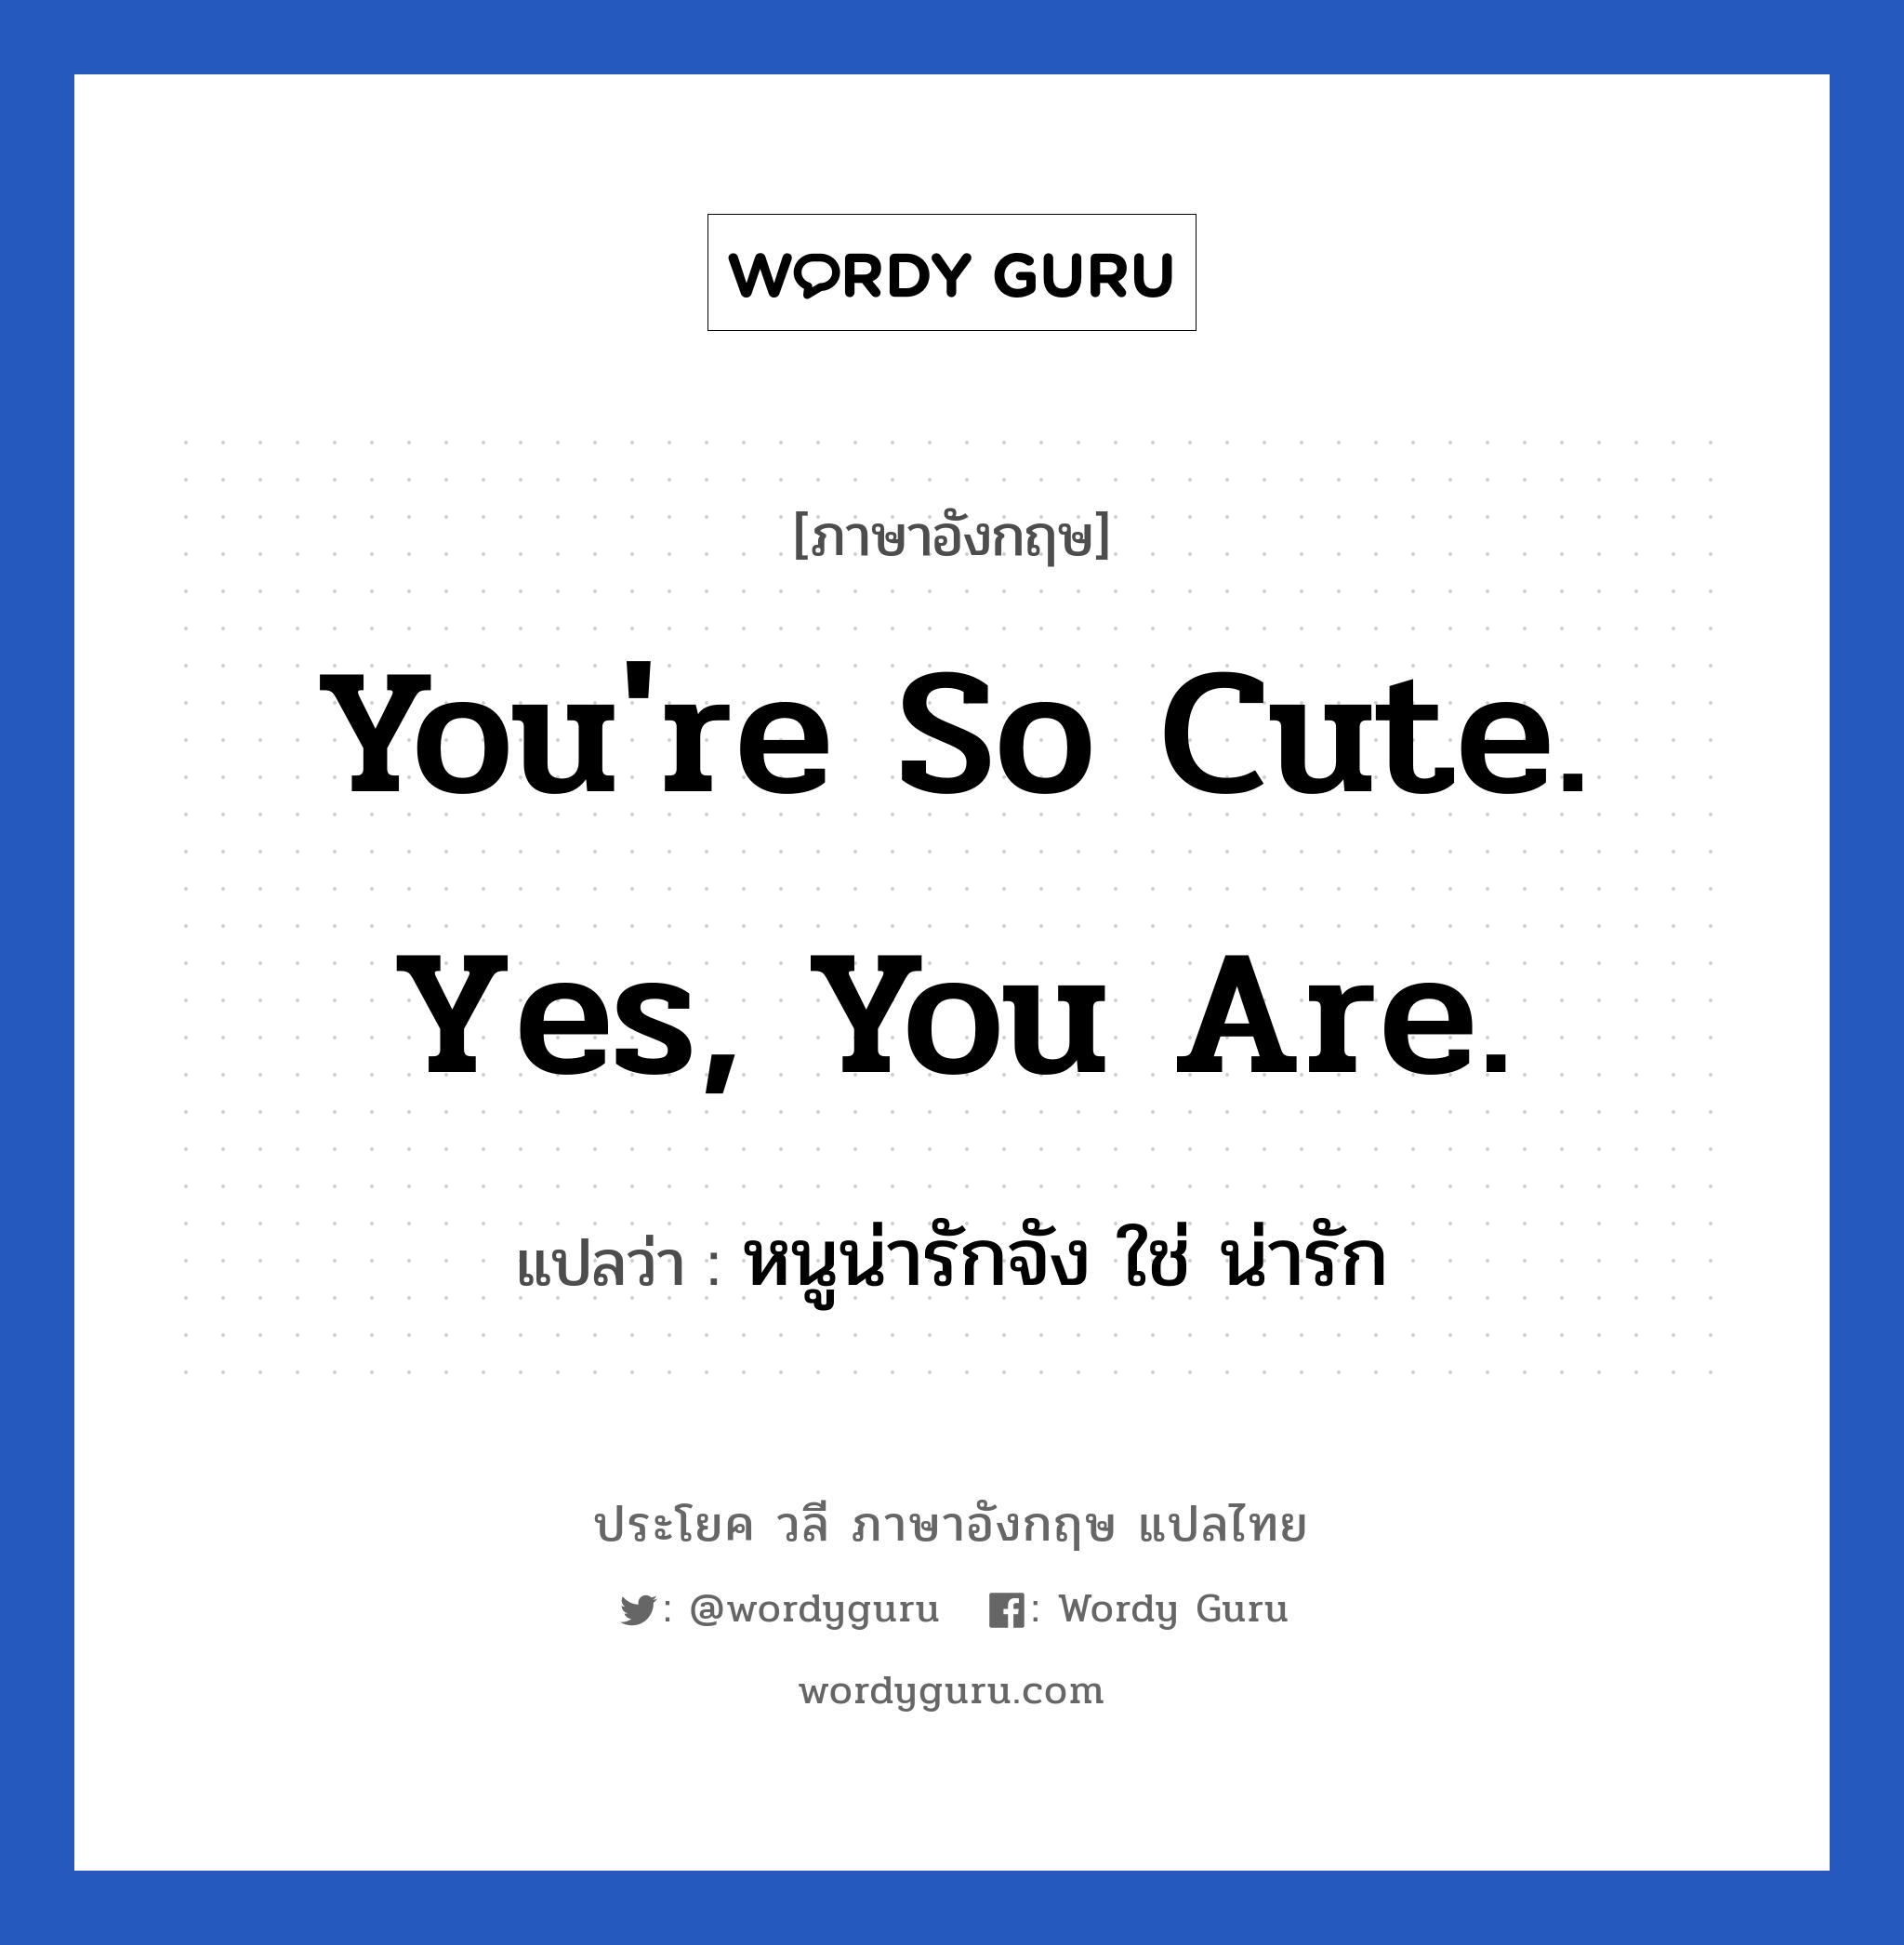 หนูน่ารักจัง ใช่ น่ารัก ภาษาอังกฤษ?, วลีภาษาอังกฤษ หนูน่ารักจัง ใช่ น่ารัก แปลว่า You're so cute. Yes, you are. หมวด คำชมเชย